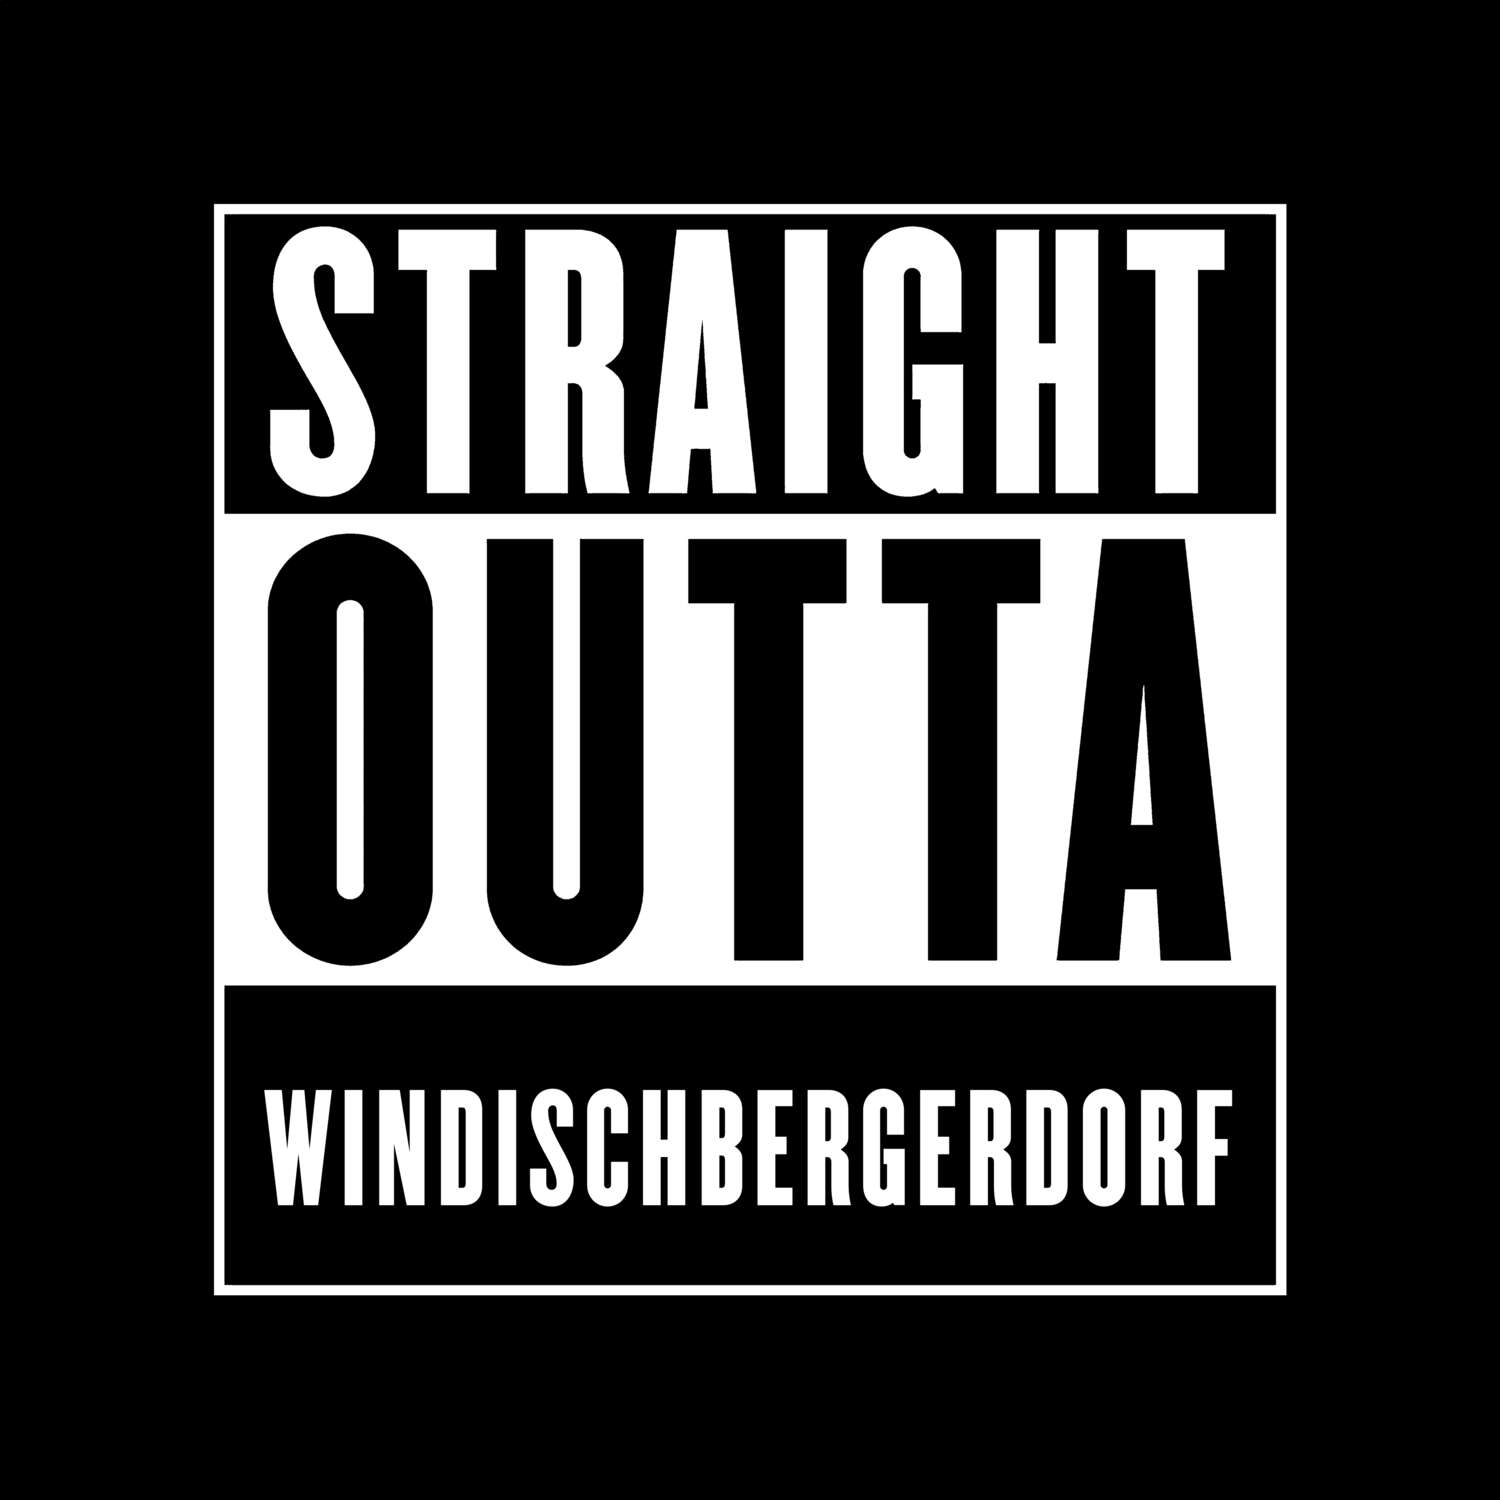 Windischbergerdorf T-Shirt »Straight Outta«